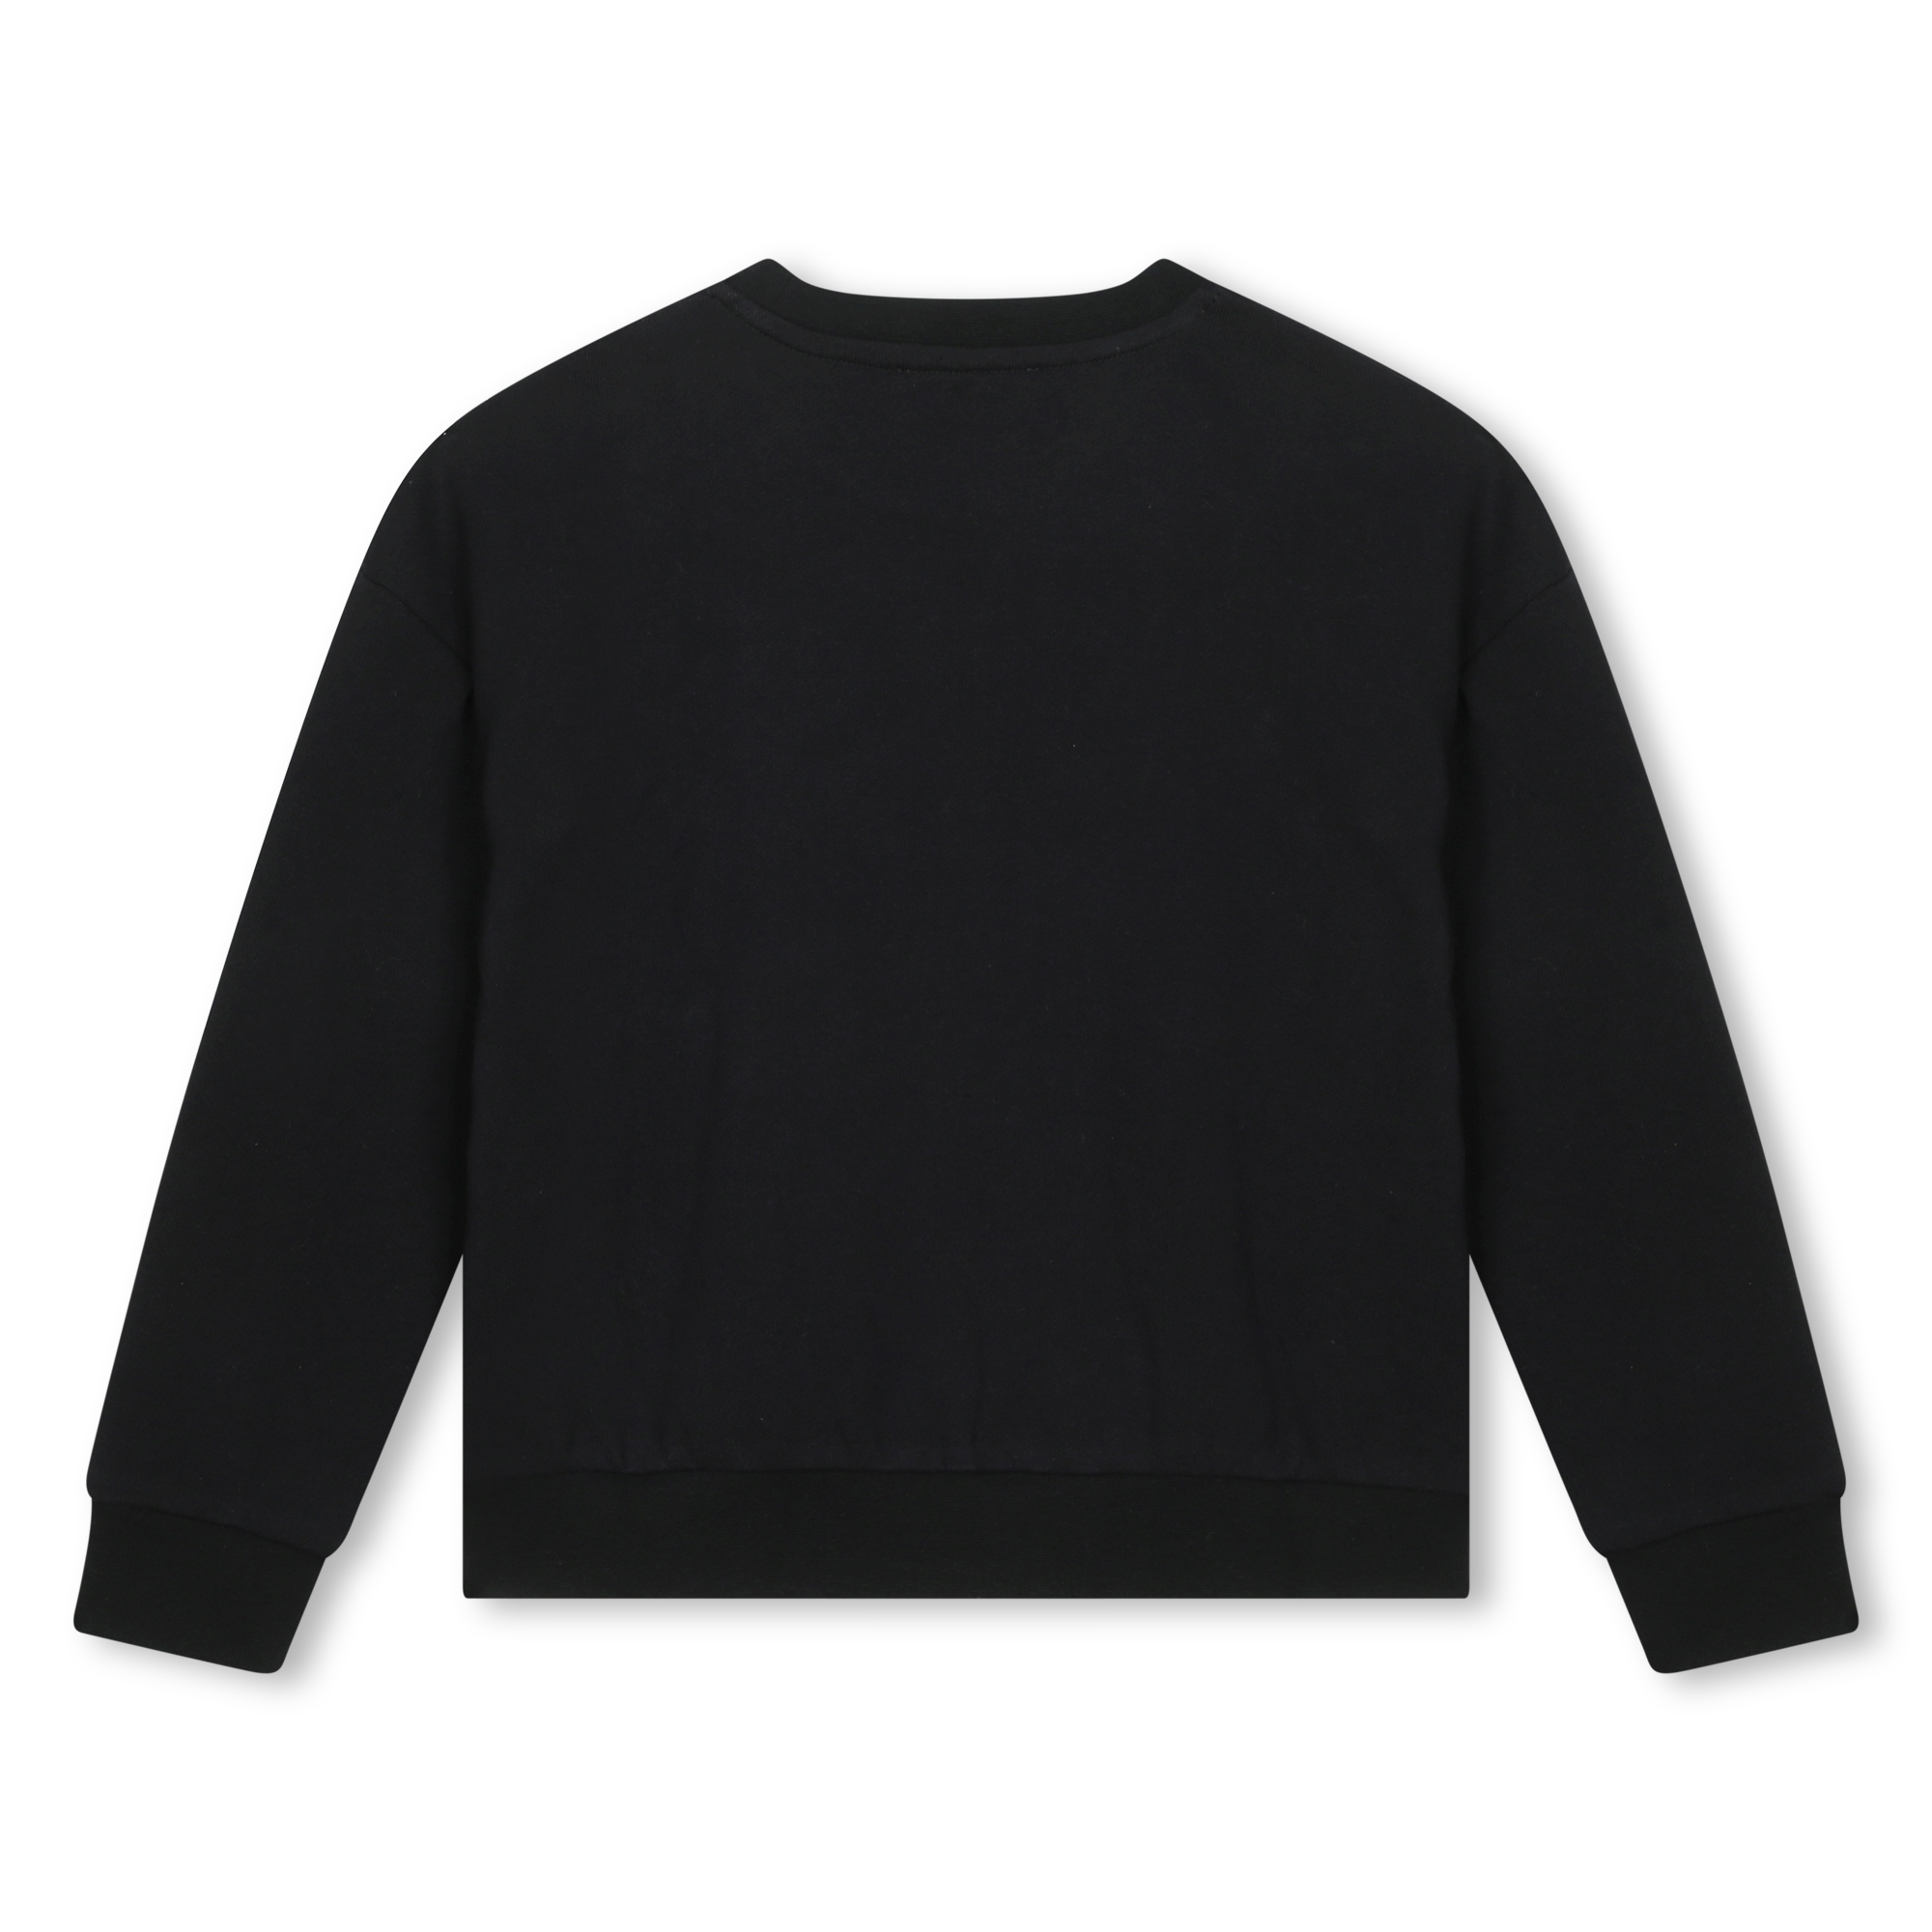 Fleece sweatshirt MICHAEL KORS for GIRL